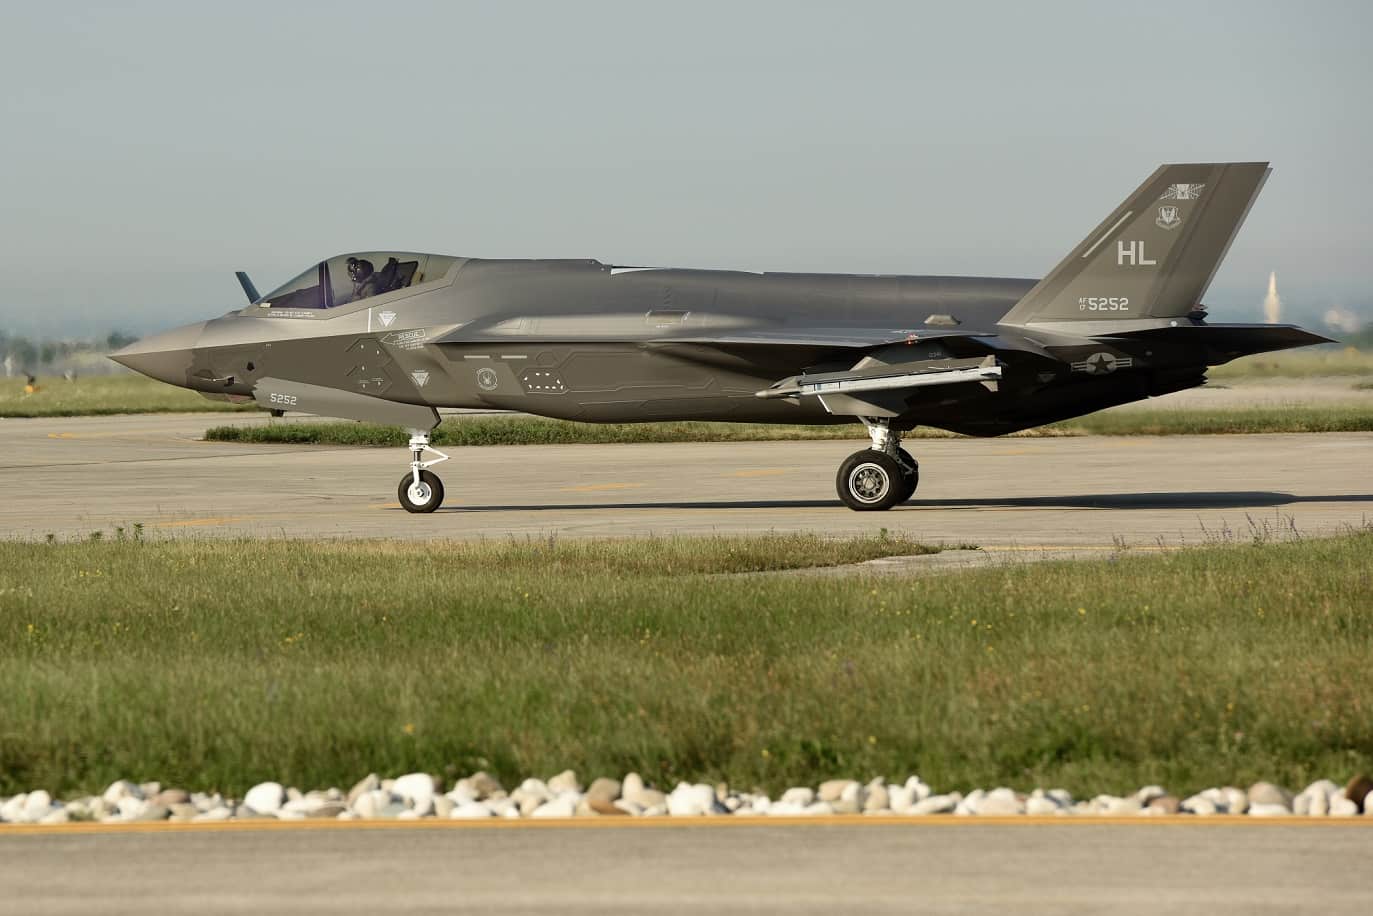 Σε ποια χώρα θέλει ο Τραμπ “διακαώς” να πουλήσει τα stealth μαχητικά F-35;